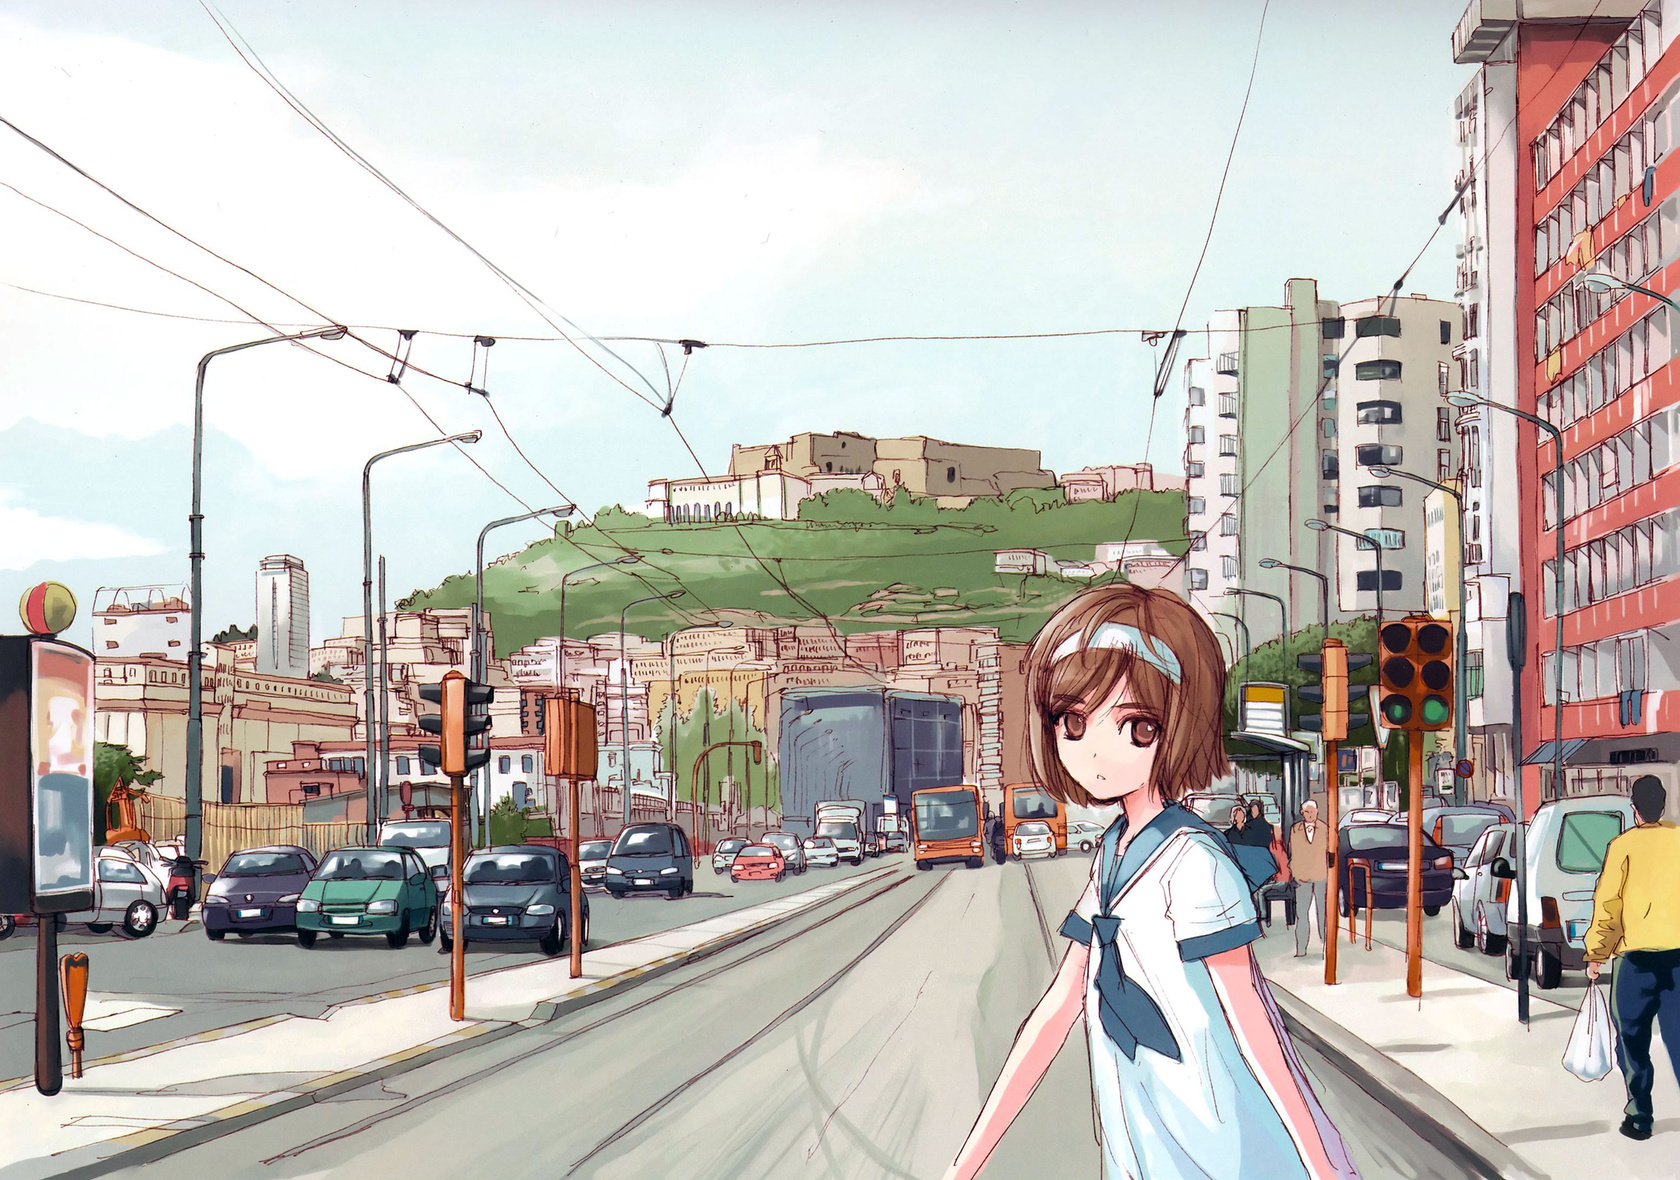 Anime Gunslinger Girl HD Wallpaper | Background Image